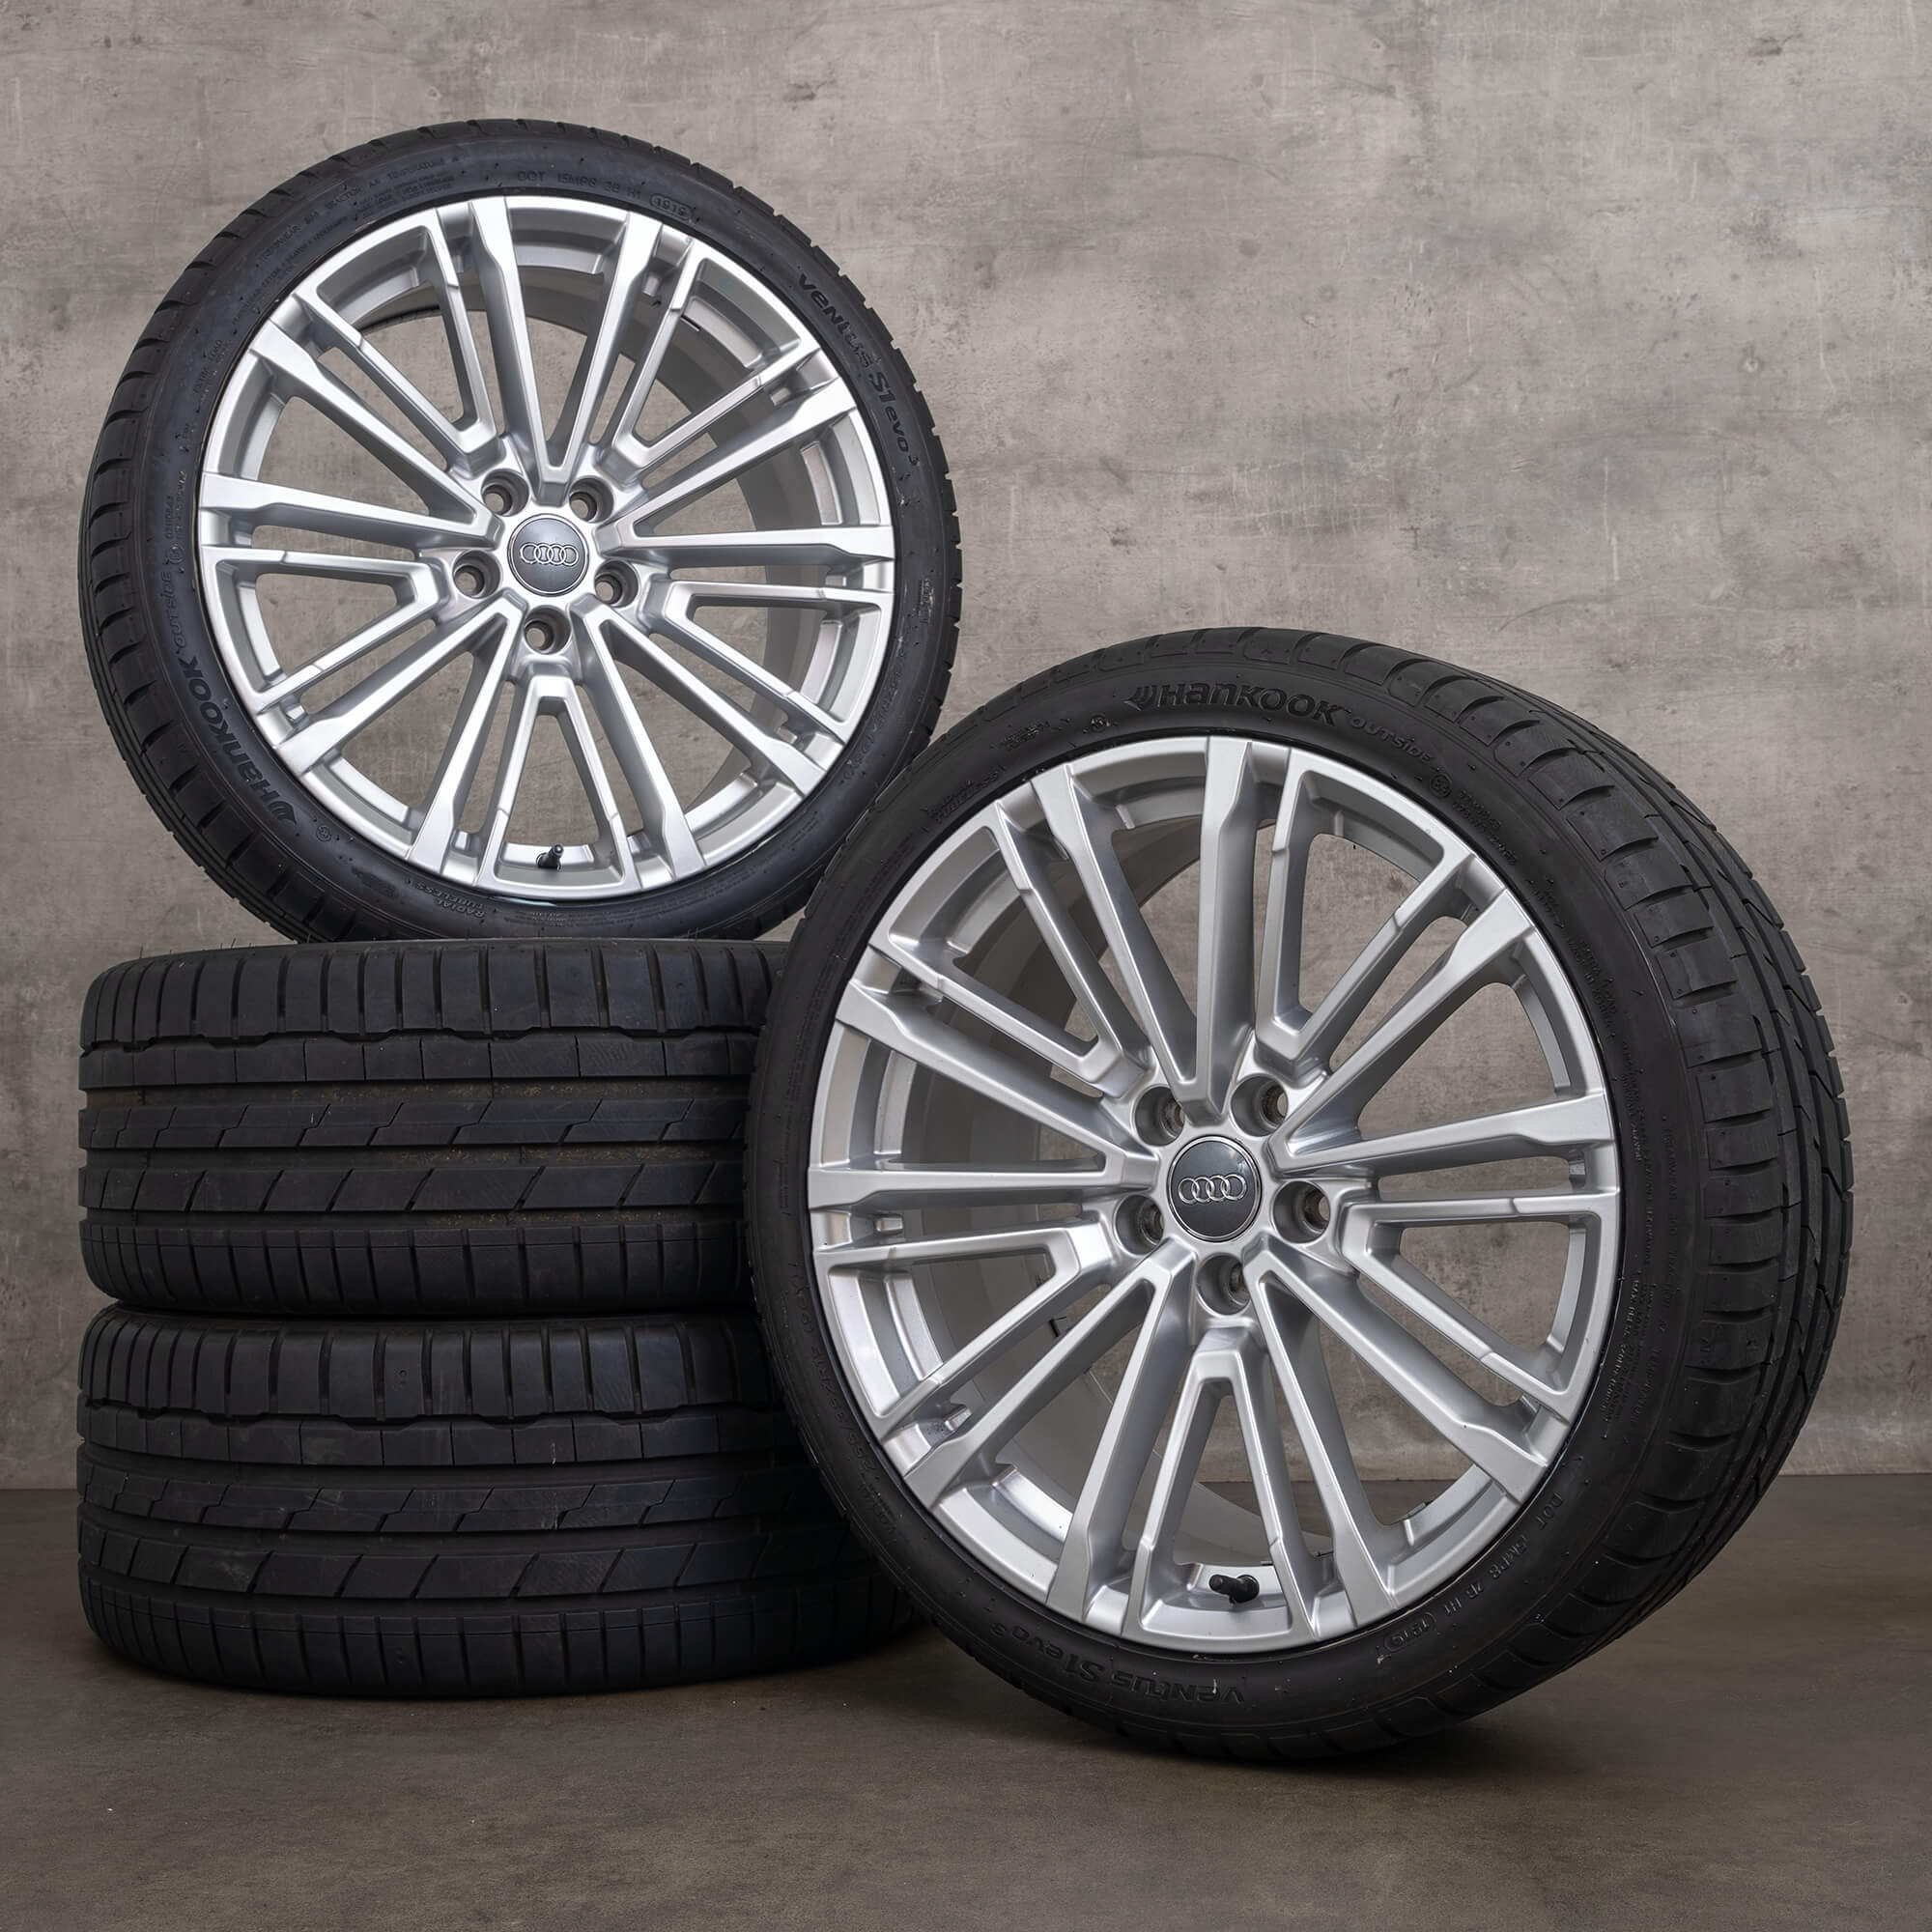 Jantes de pneus verão originais Audi A5 S5 F5 19 polegadas 8W0601025CC prata